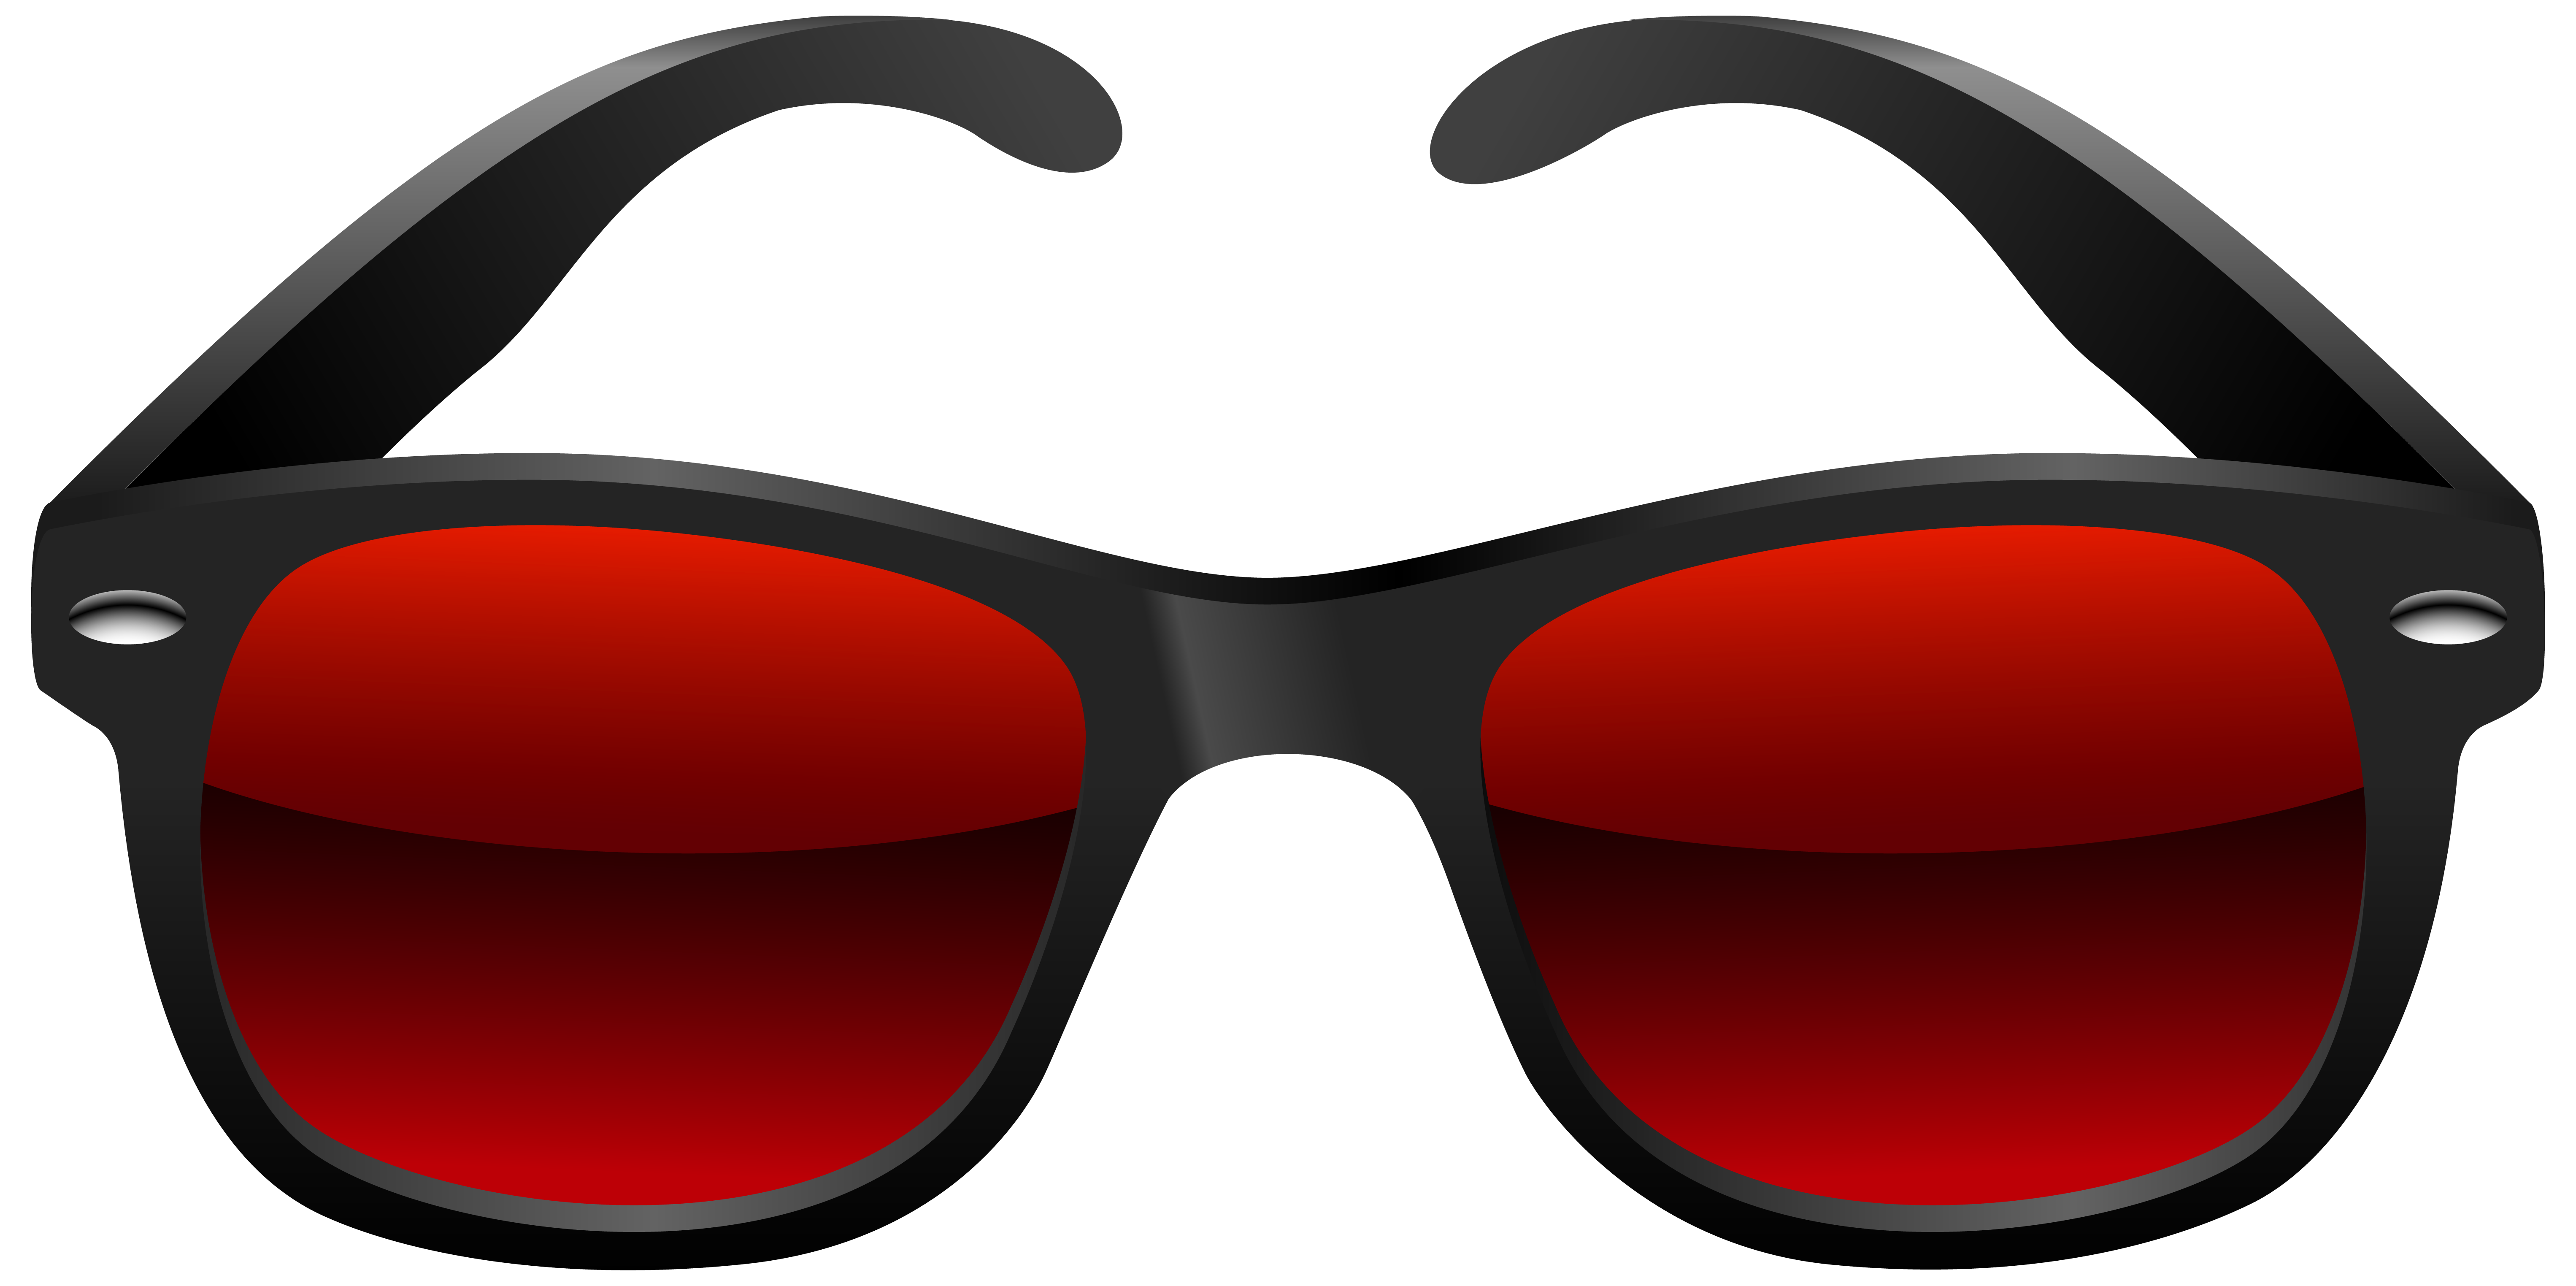 Sunglasses glasses clip art 3 4 clipartcow